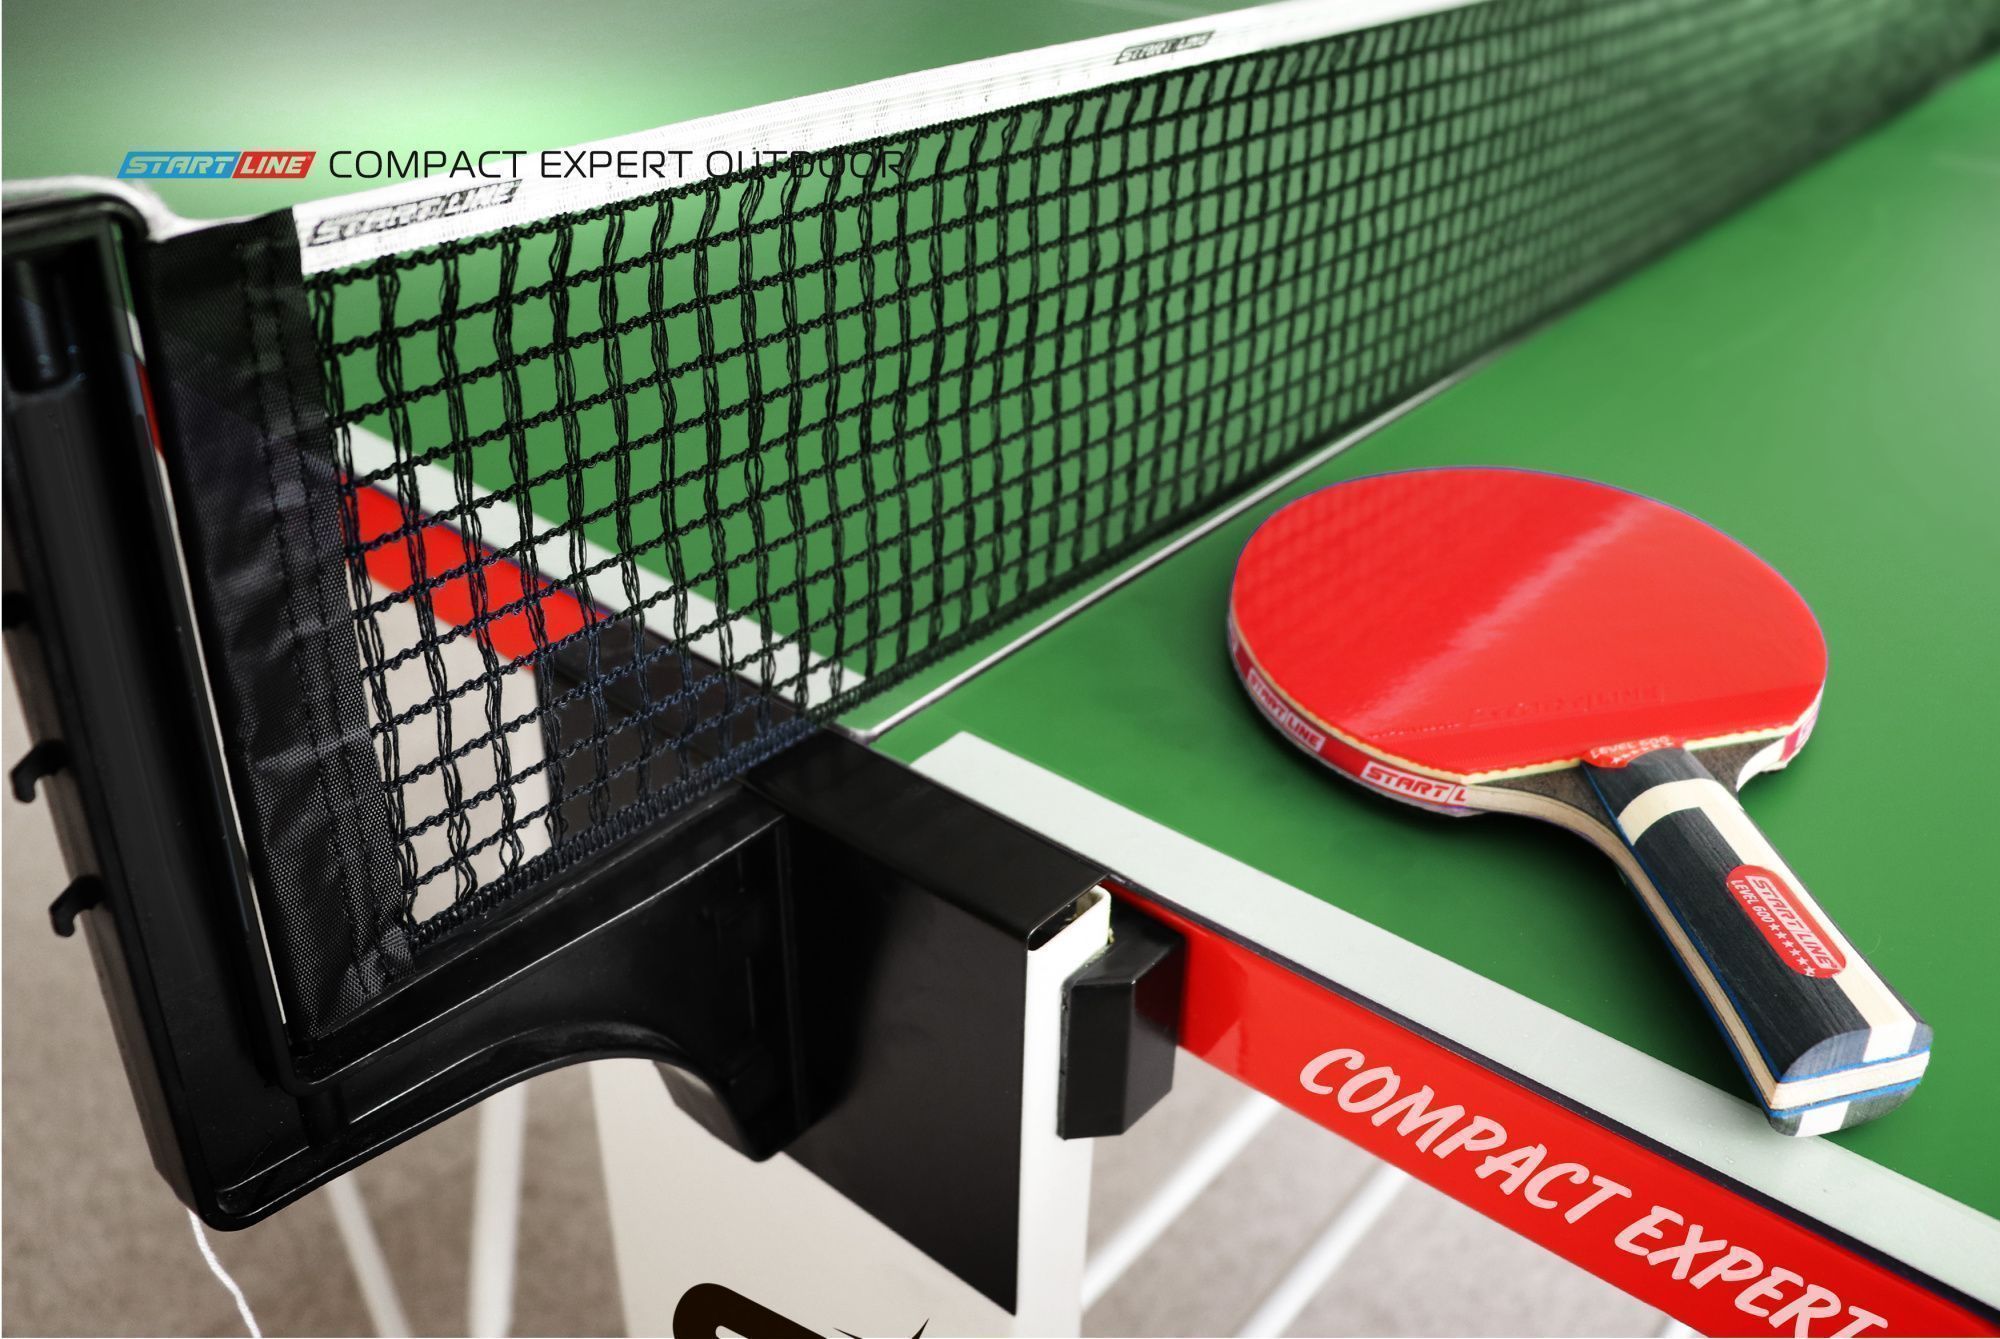 Стол теннисный Compact EXPERT 6 Всепогодный Зелёный